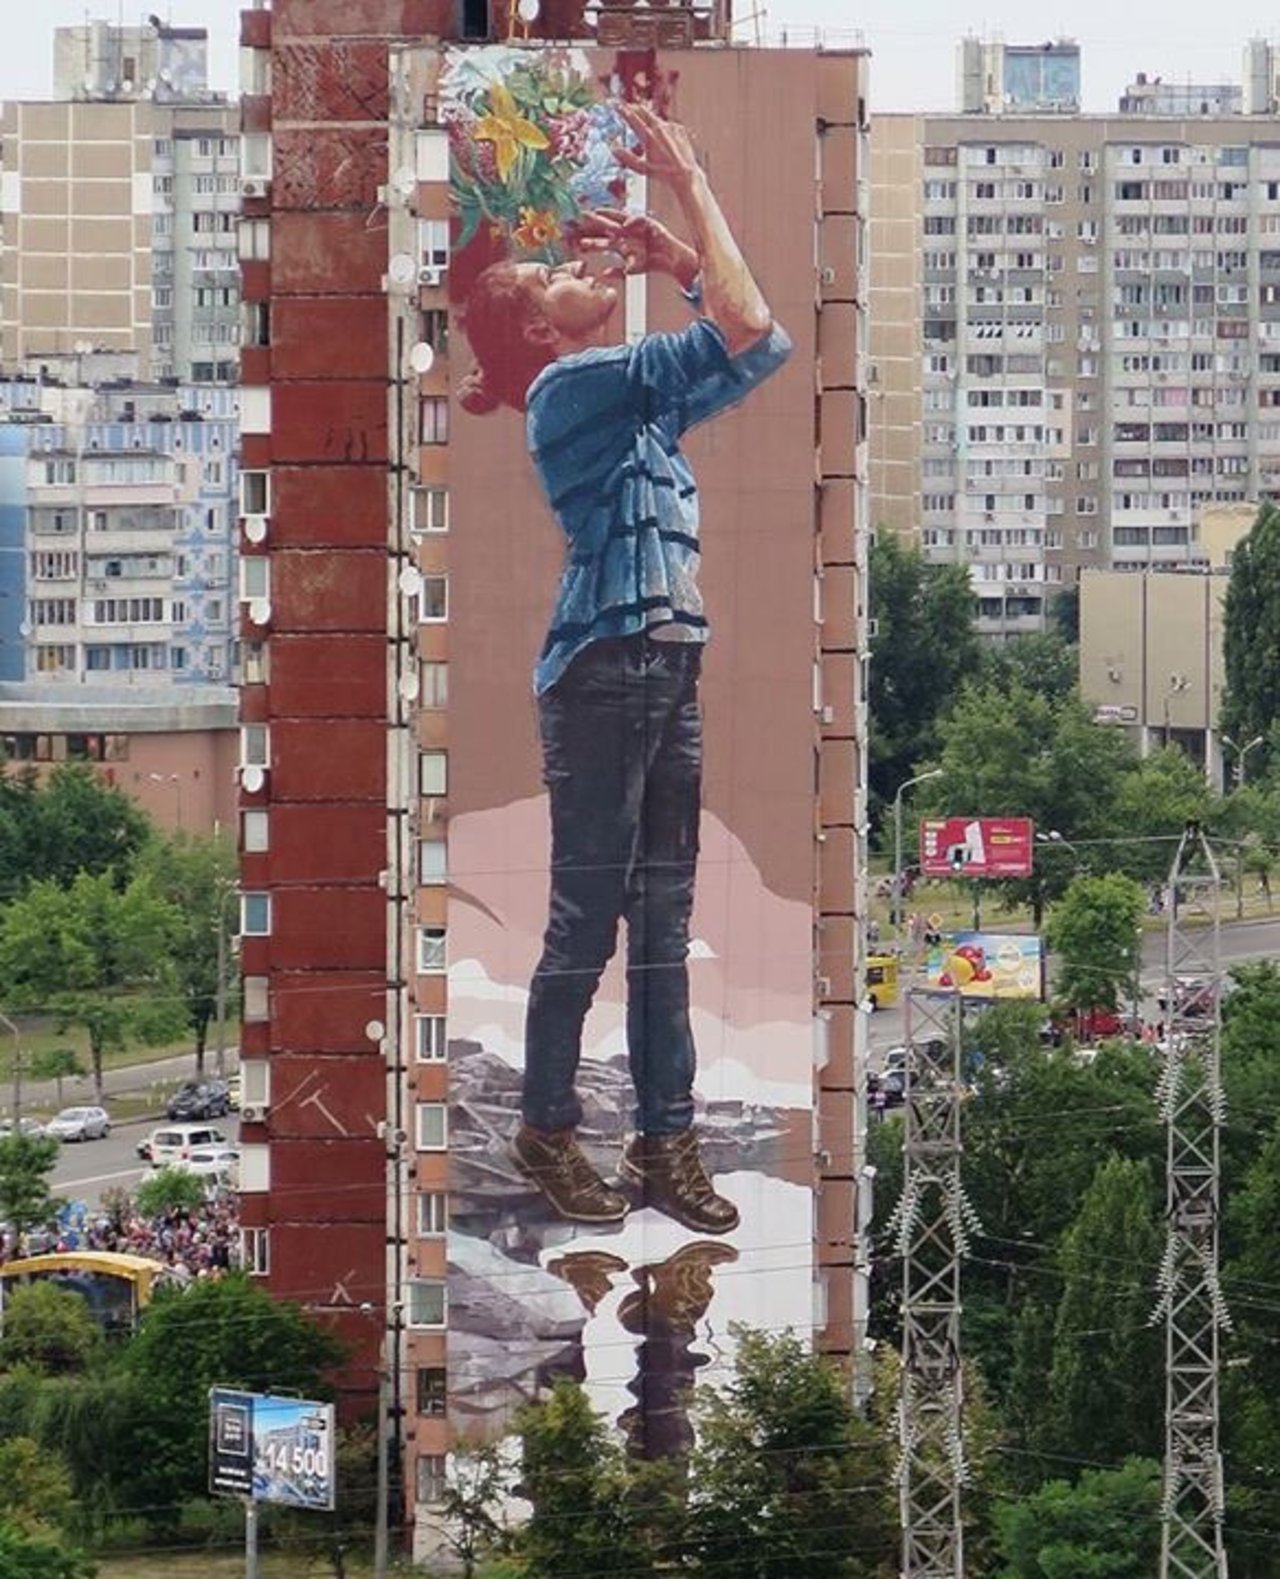 The amazing new Street Art piece by Fintan Magee in Kiev #art #mural #graffiti #streetart https://t.co/KCEzkpOY05